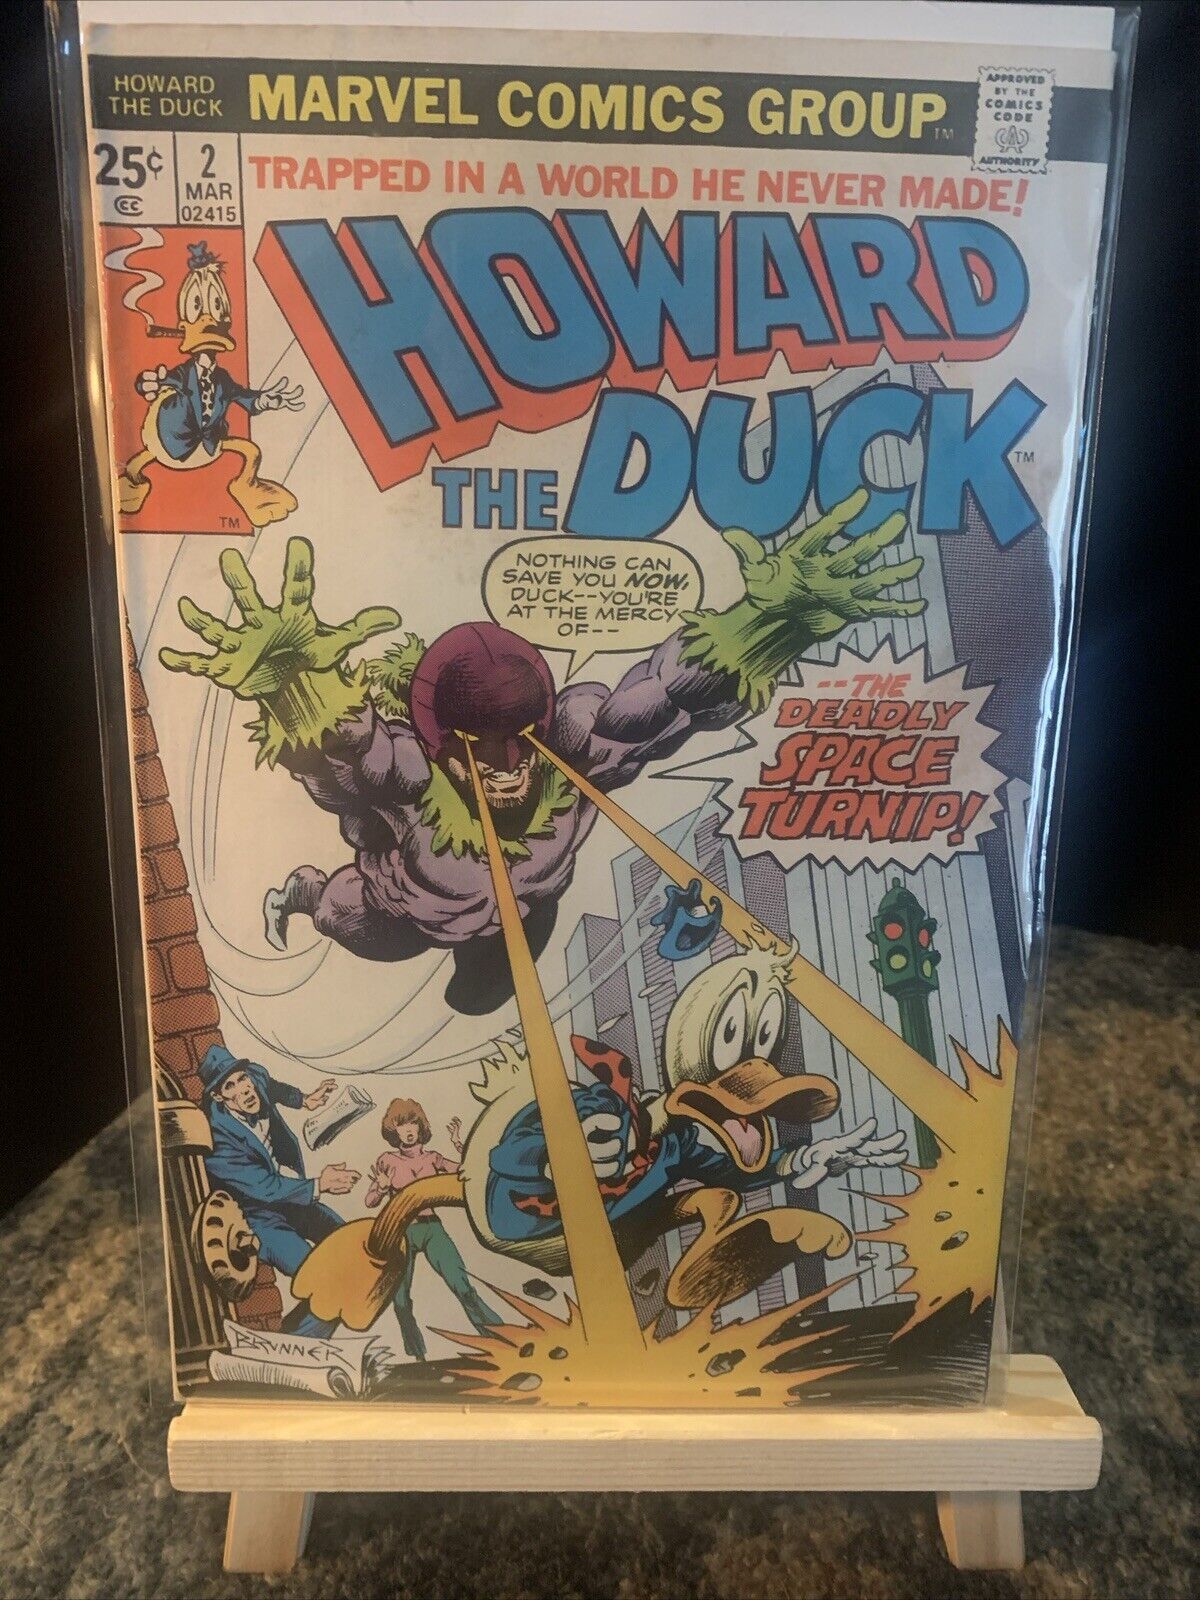 Howard The Duck #2 Brunner Cover & Art Marvel Comics March 1976, VTG, Nostalgia